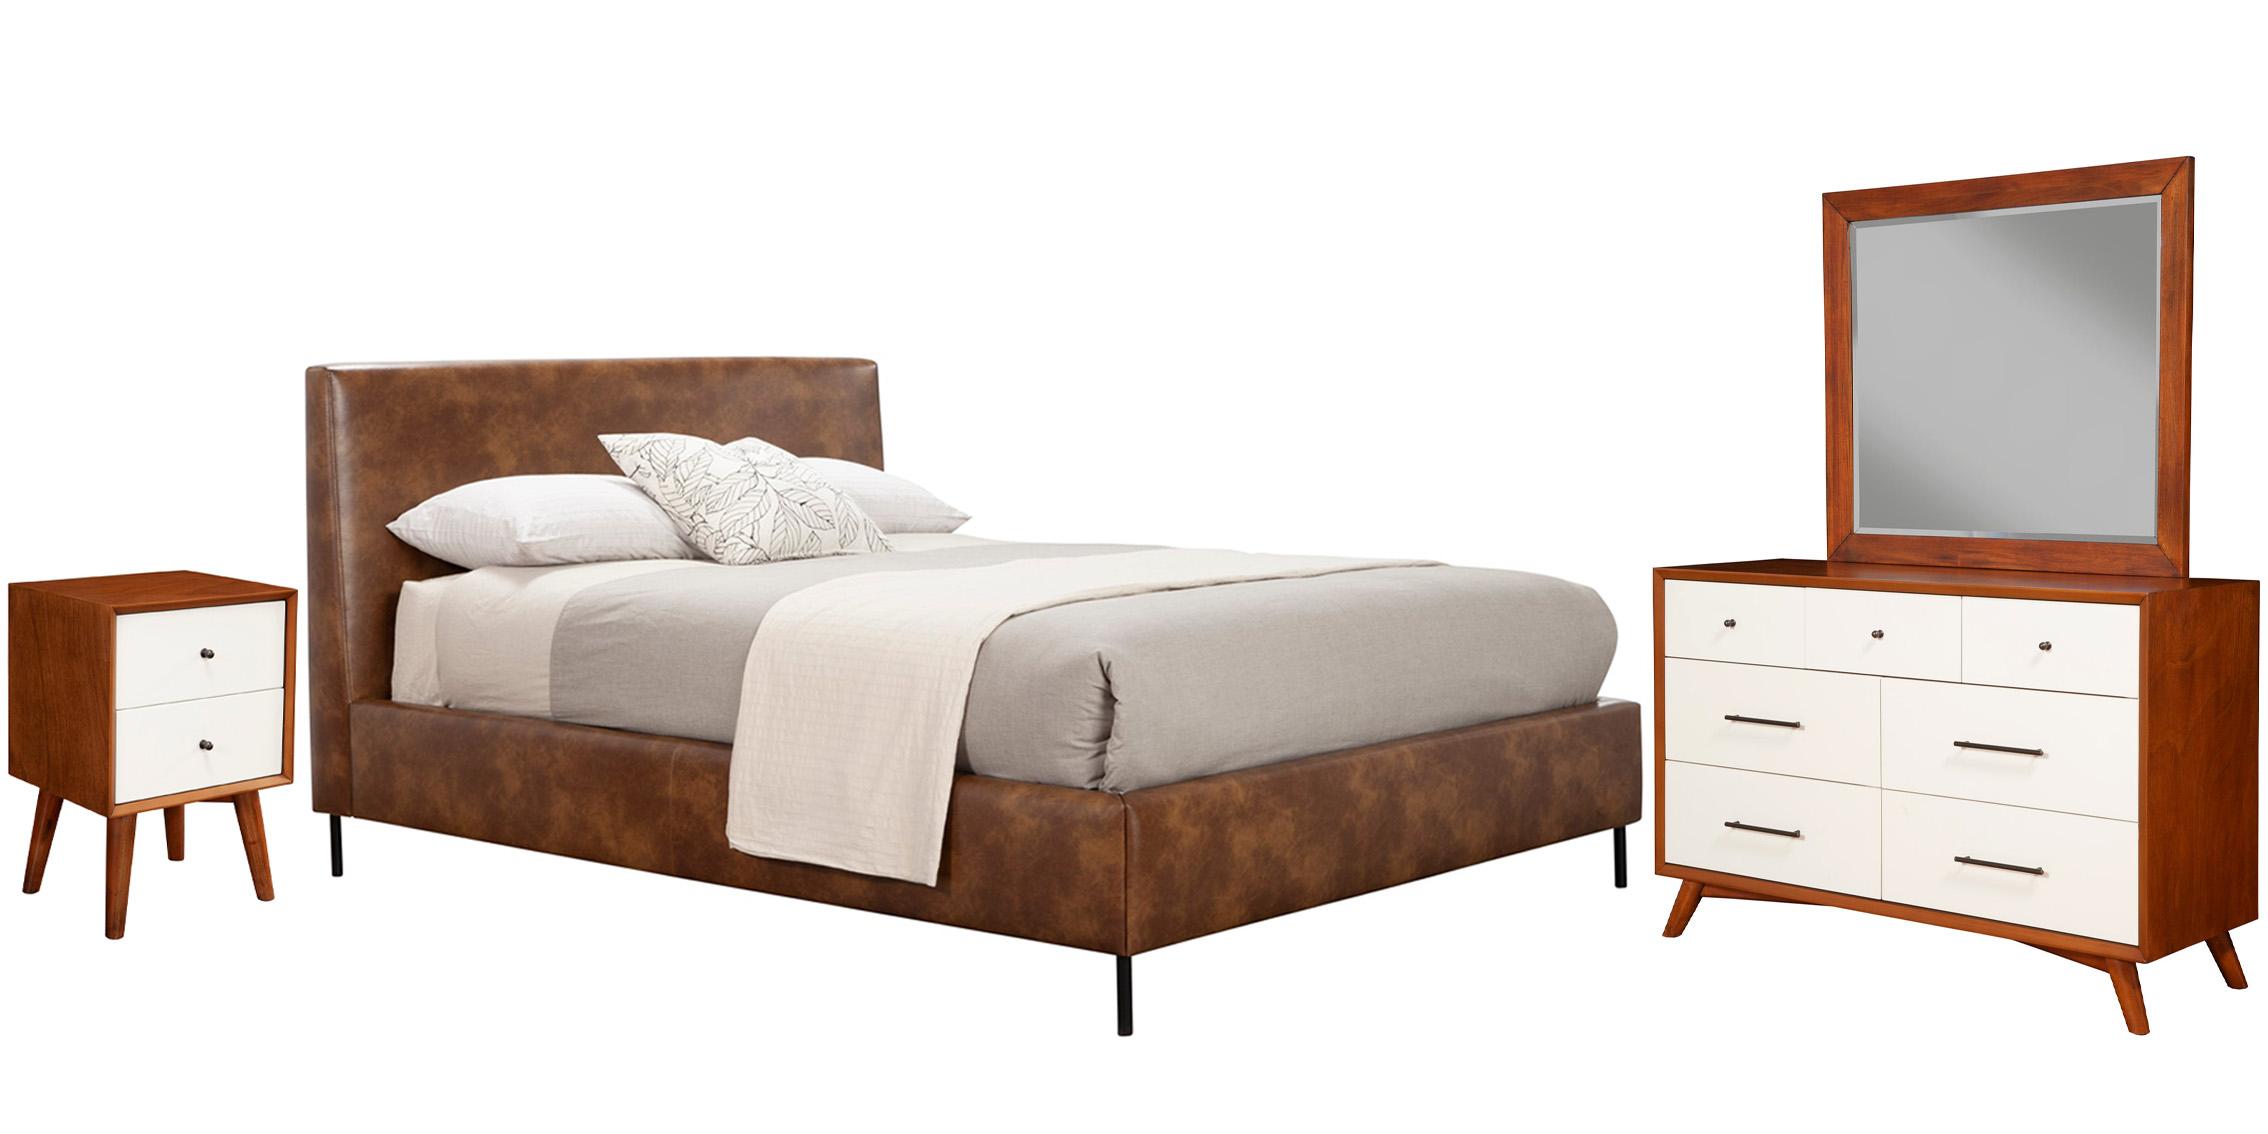 Modern, Rustic Platform Bedroom Set SOPHIA/FLYNN 6902CK-BRN-Set-4 in Brown Faux Leather